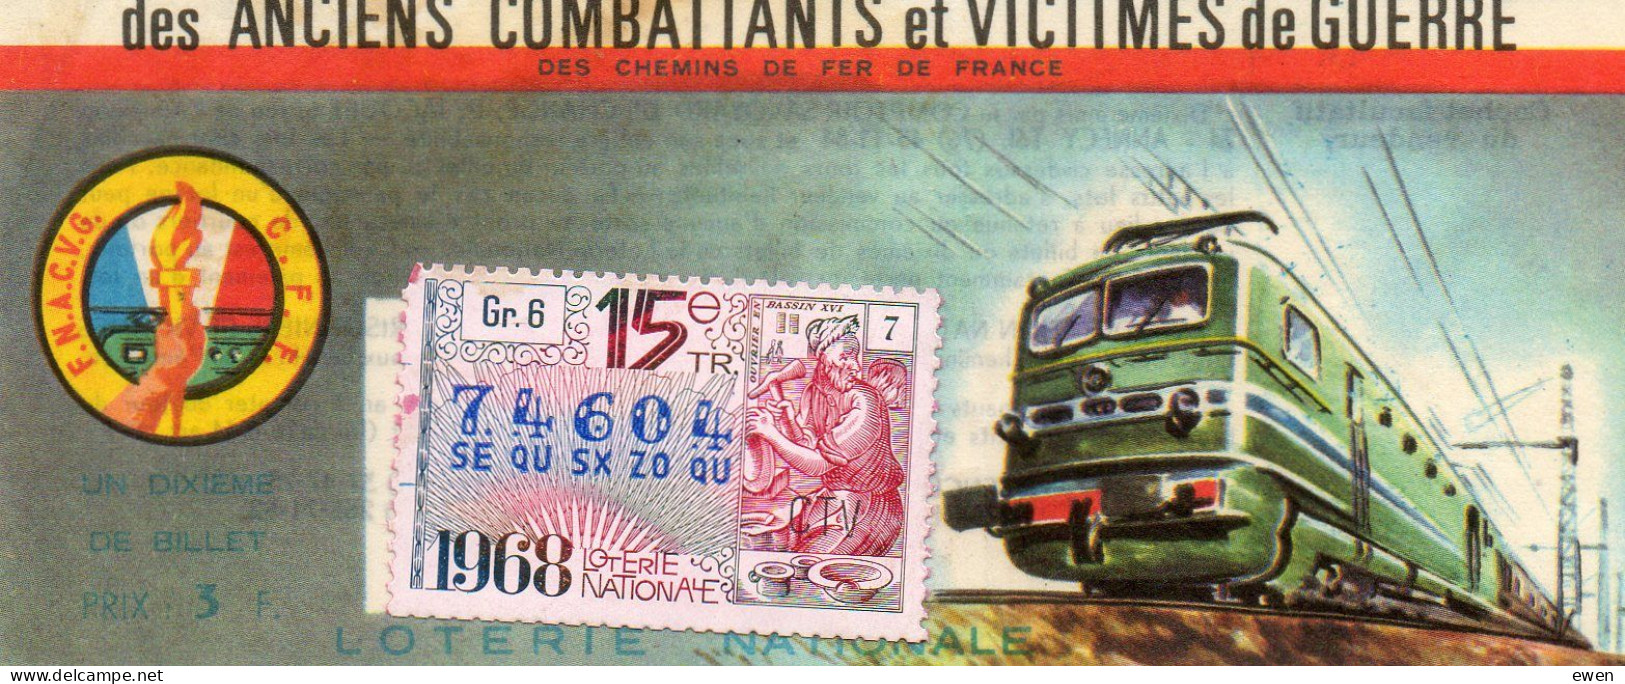 Billet Loterie Nationale Pour Victimes De Guerre. Dessin De Locomotive. 1968. - Lottery Tickets